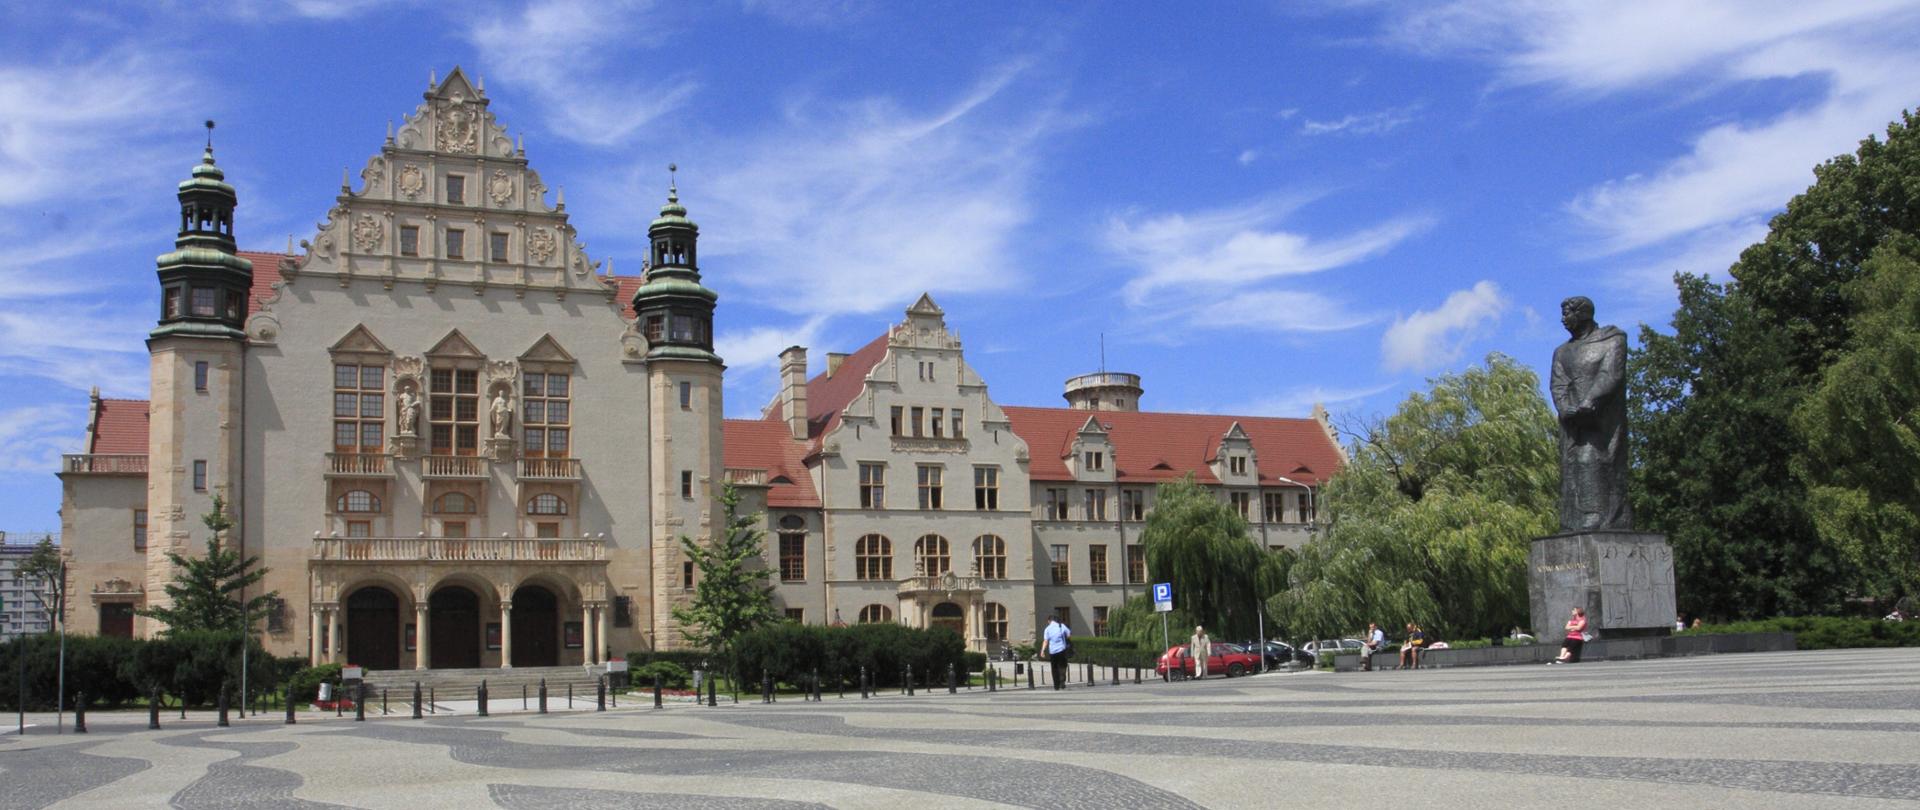 Budynek Uniwersytetu im. Adama Mickiewicza w Poznaniu